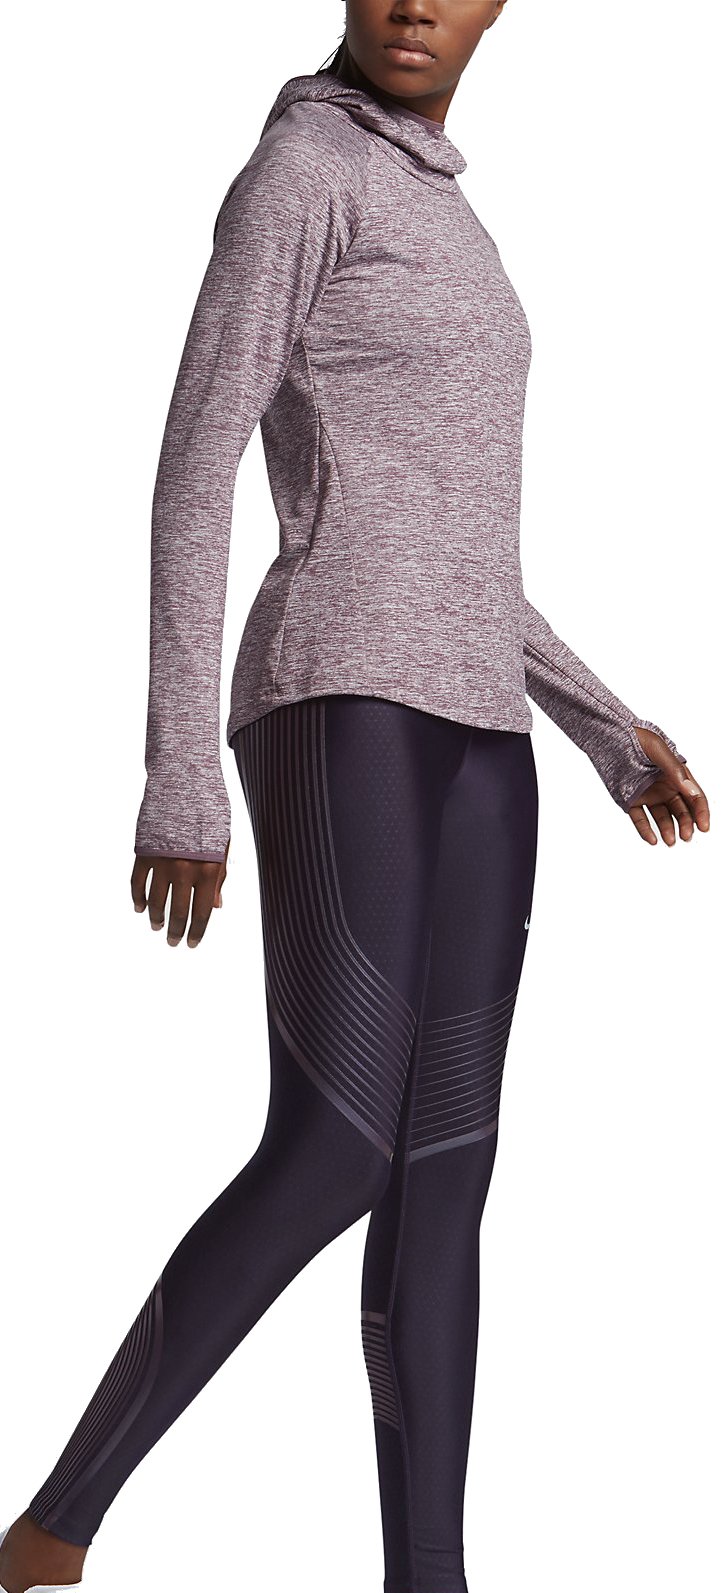 Nike Power Speed Women's Running Capris 801694 Medium $110